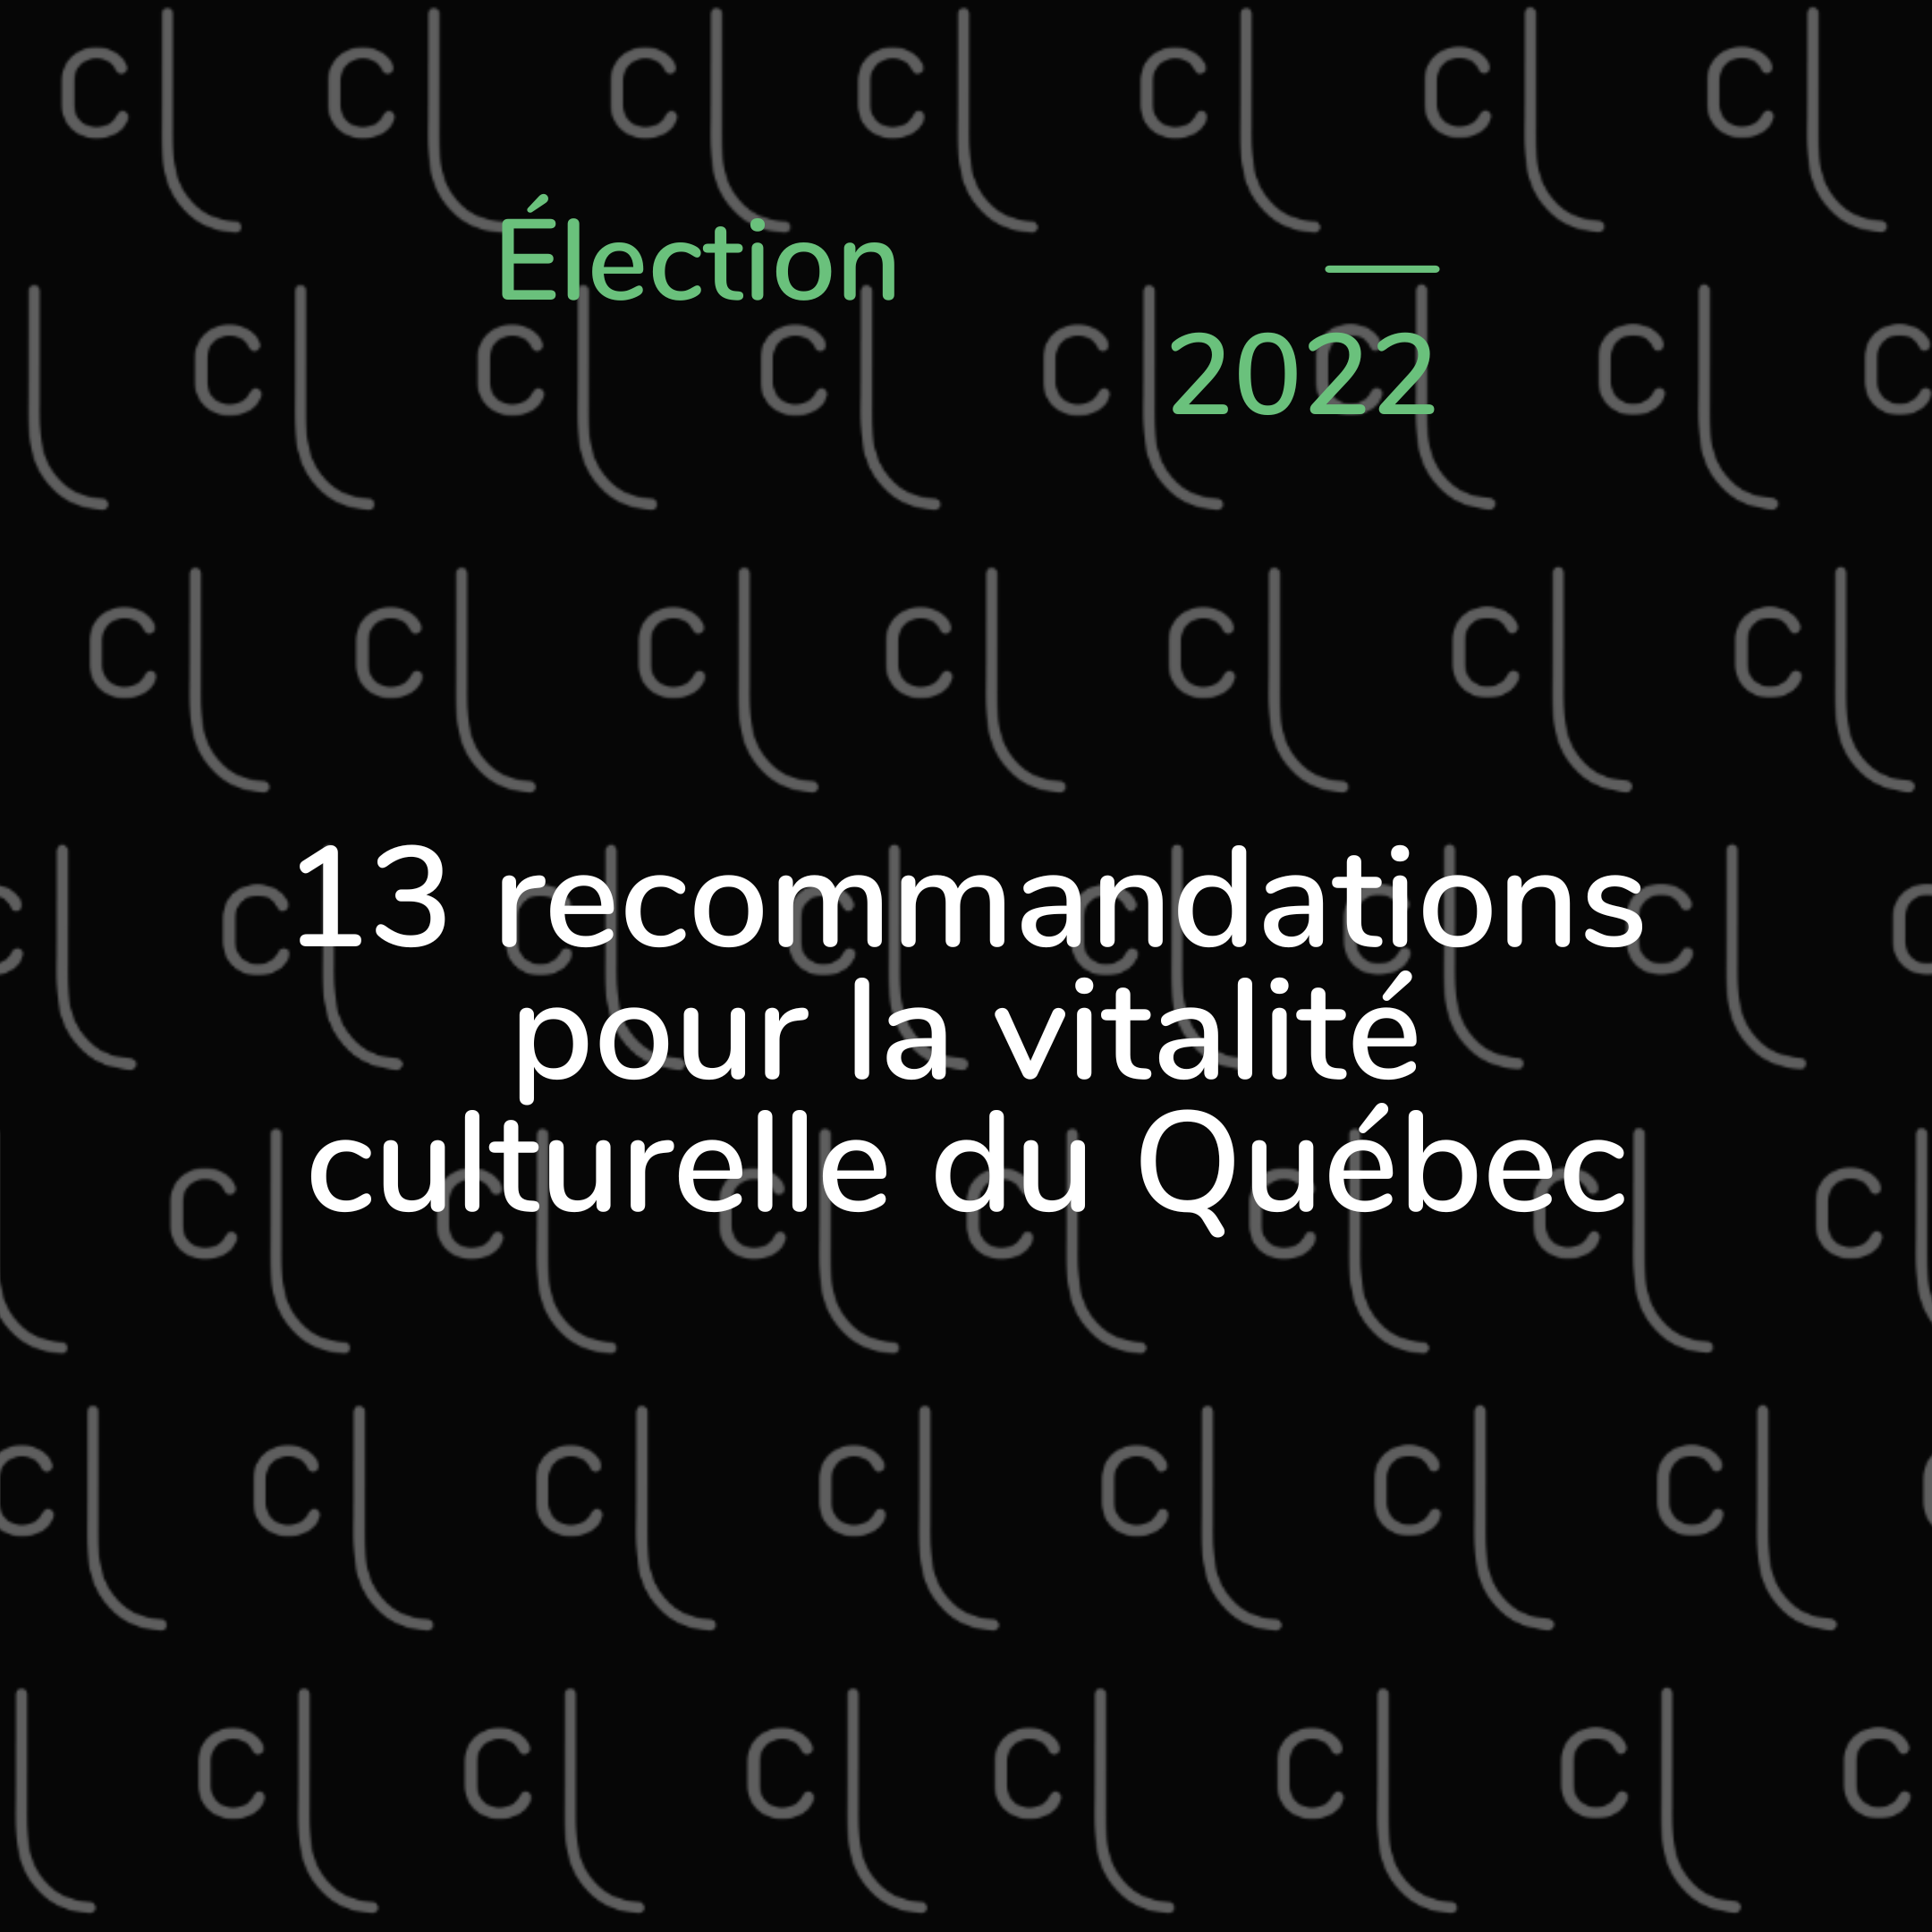 Les recommandations du Réseau des conseils régionaux de la culture du Québec